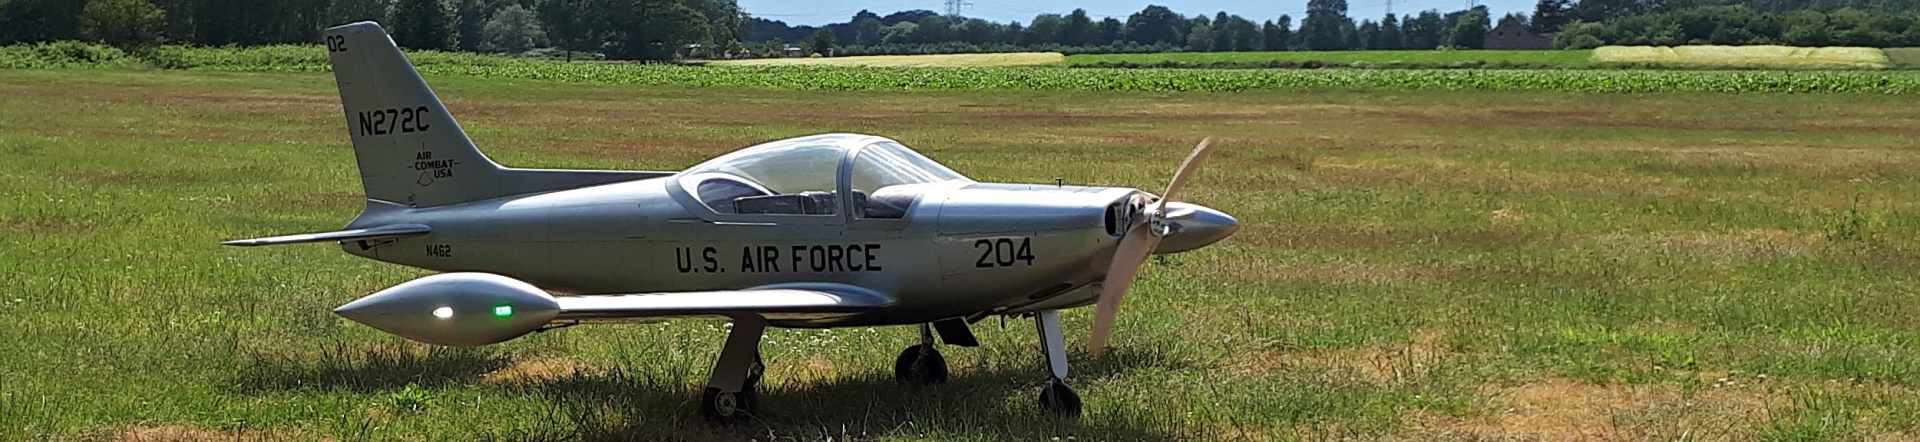 Modellflug Jet